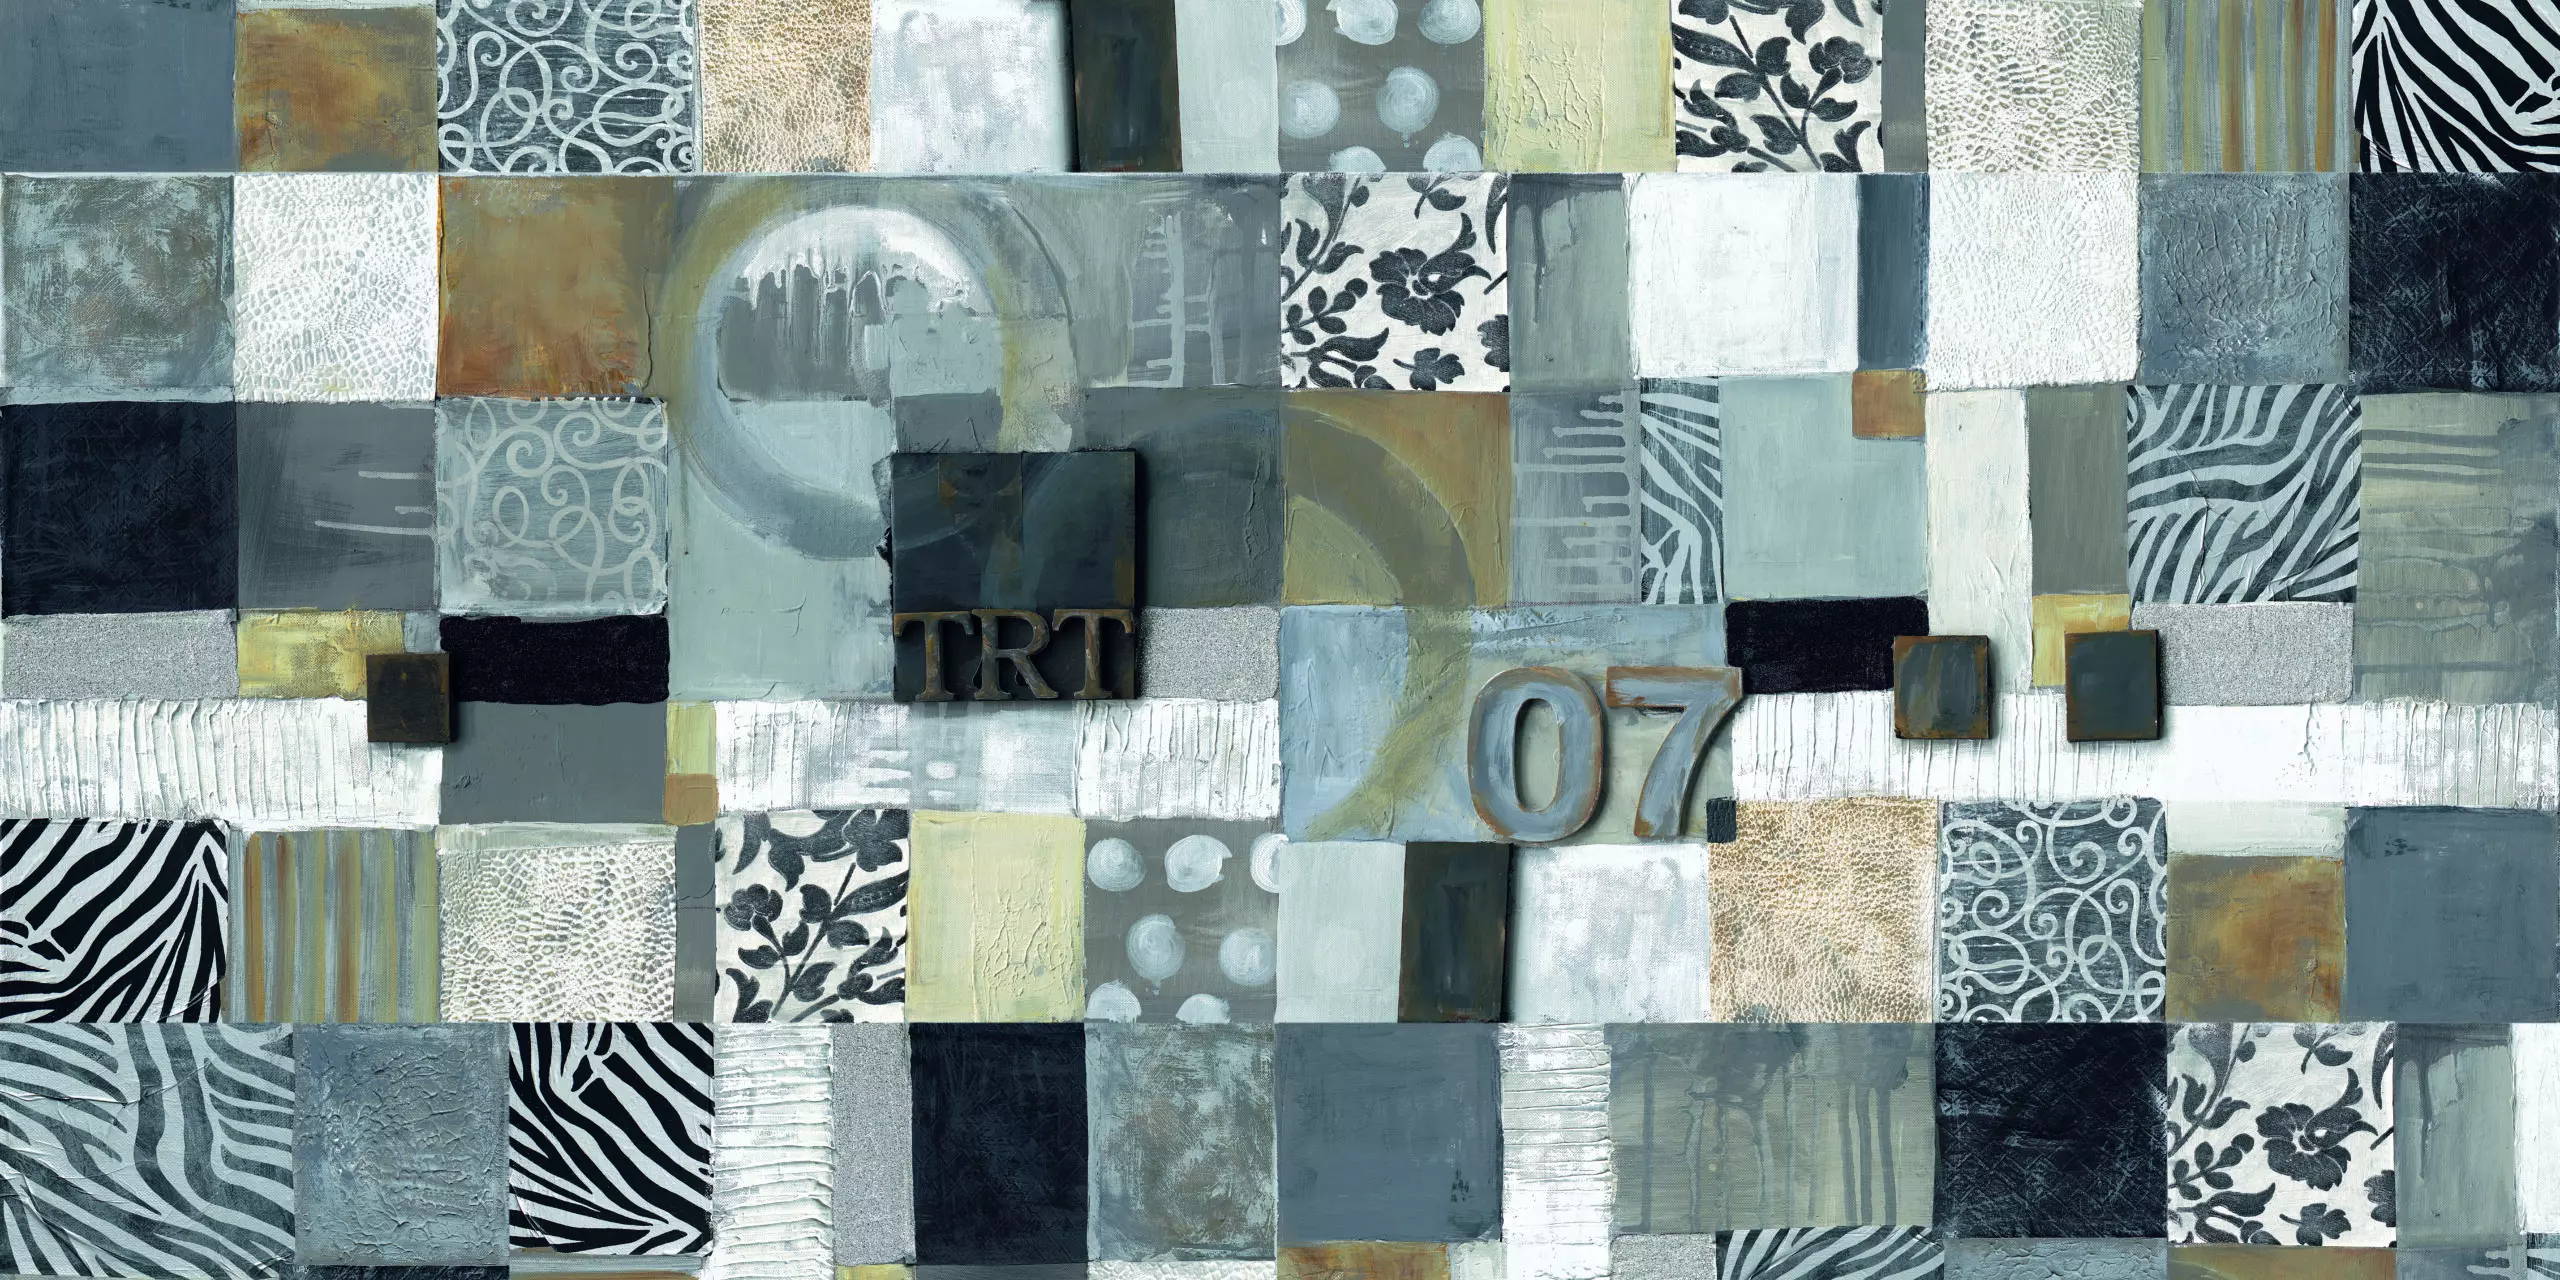 Wandbild (5010) Square Pattern TRT 07 präsentiert: Kreatives,Abstrakt